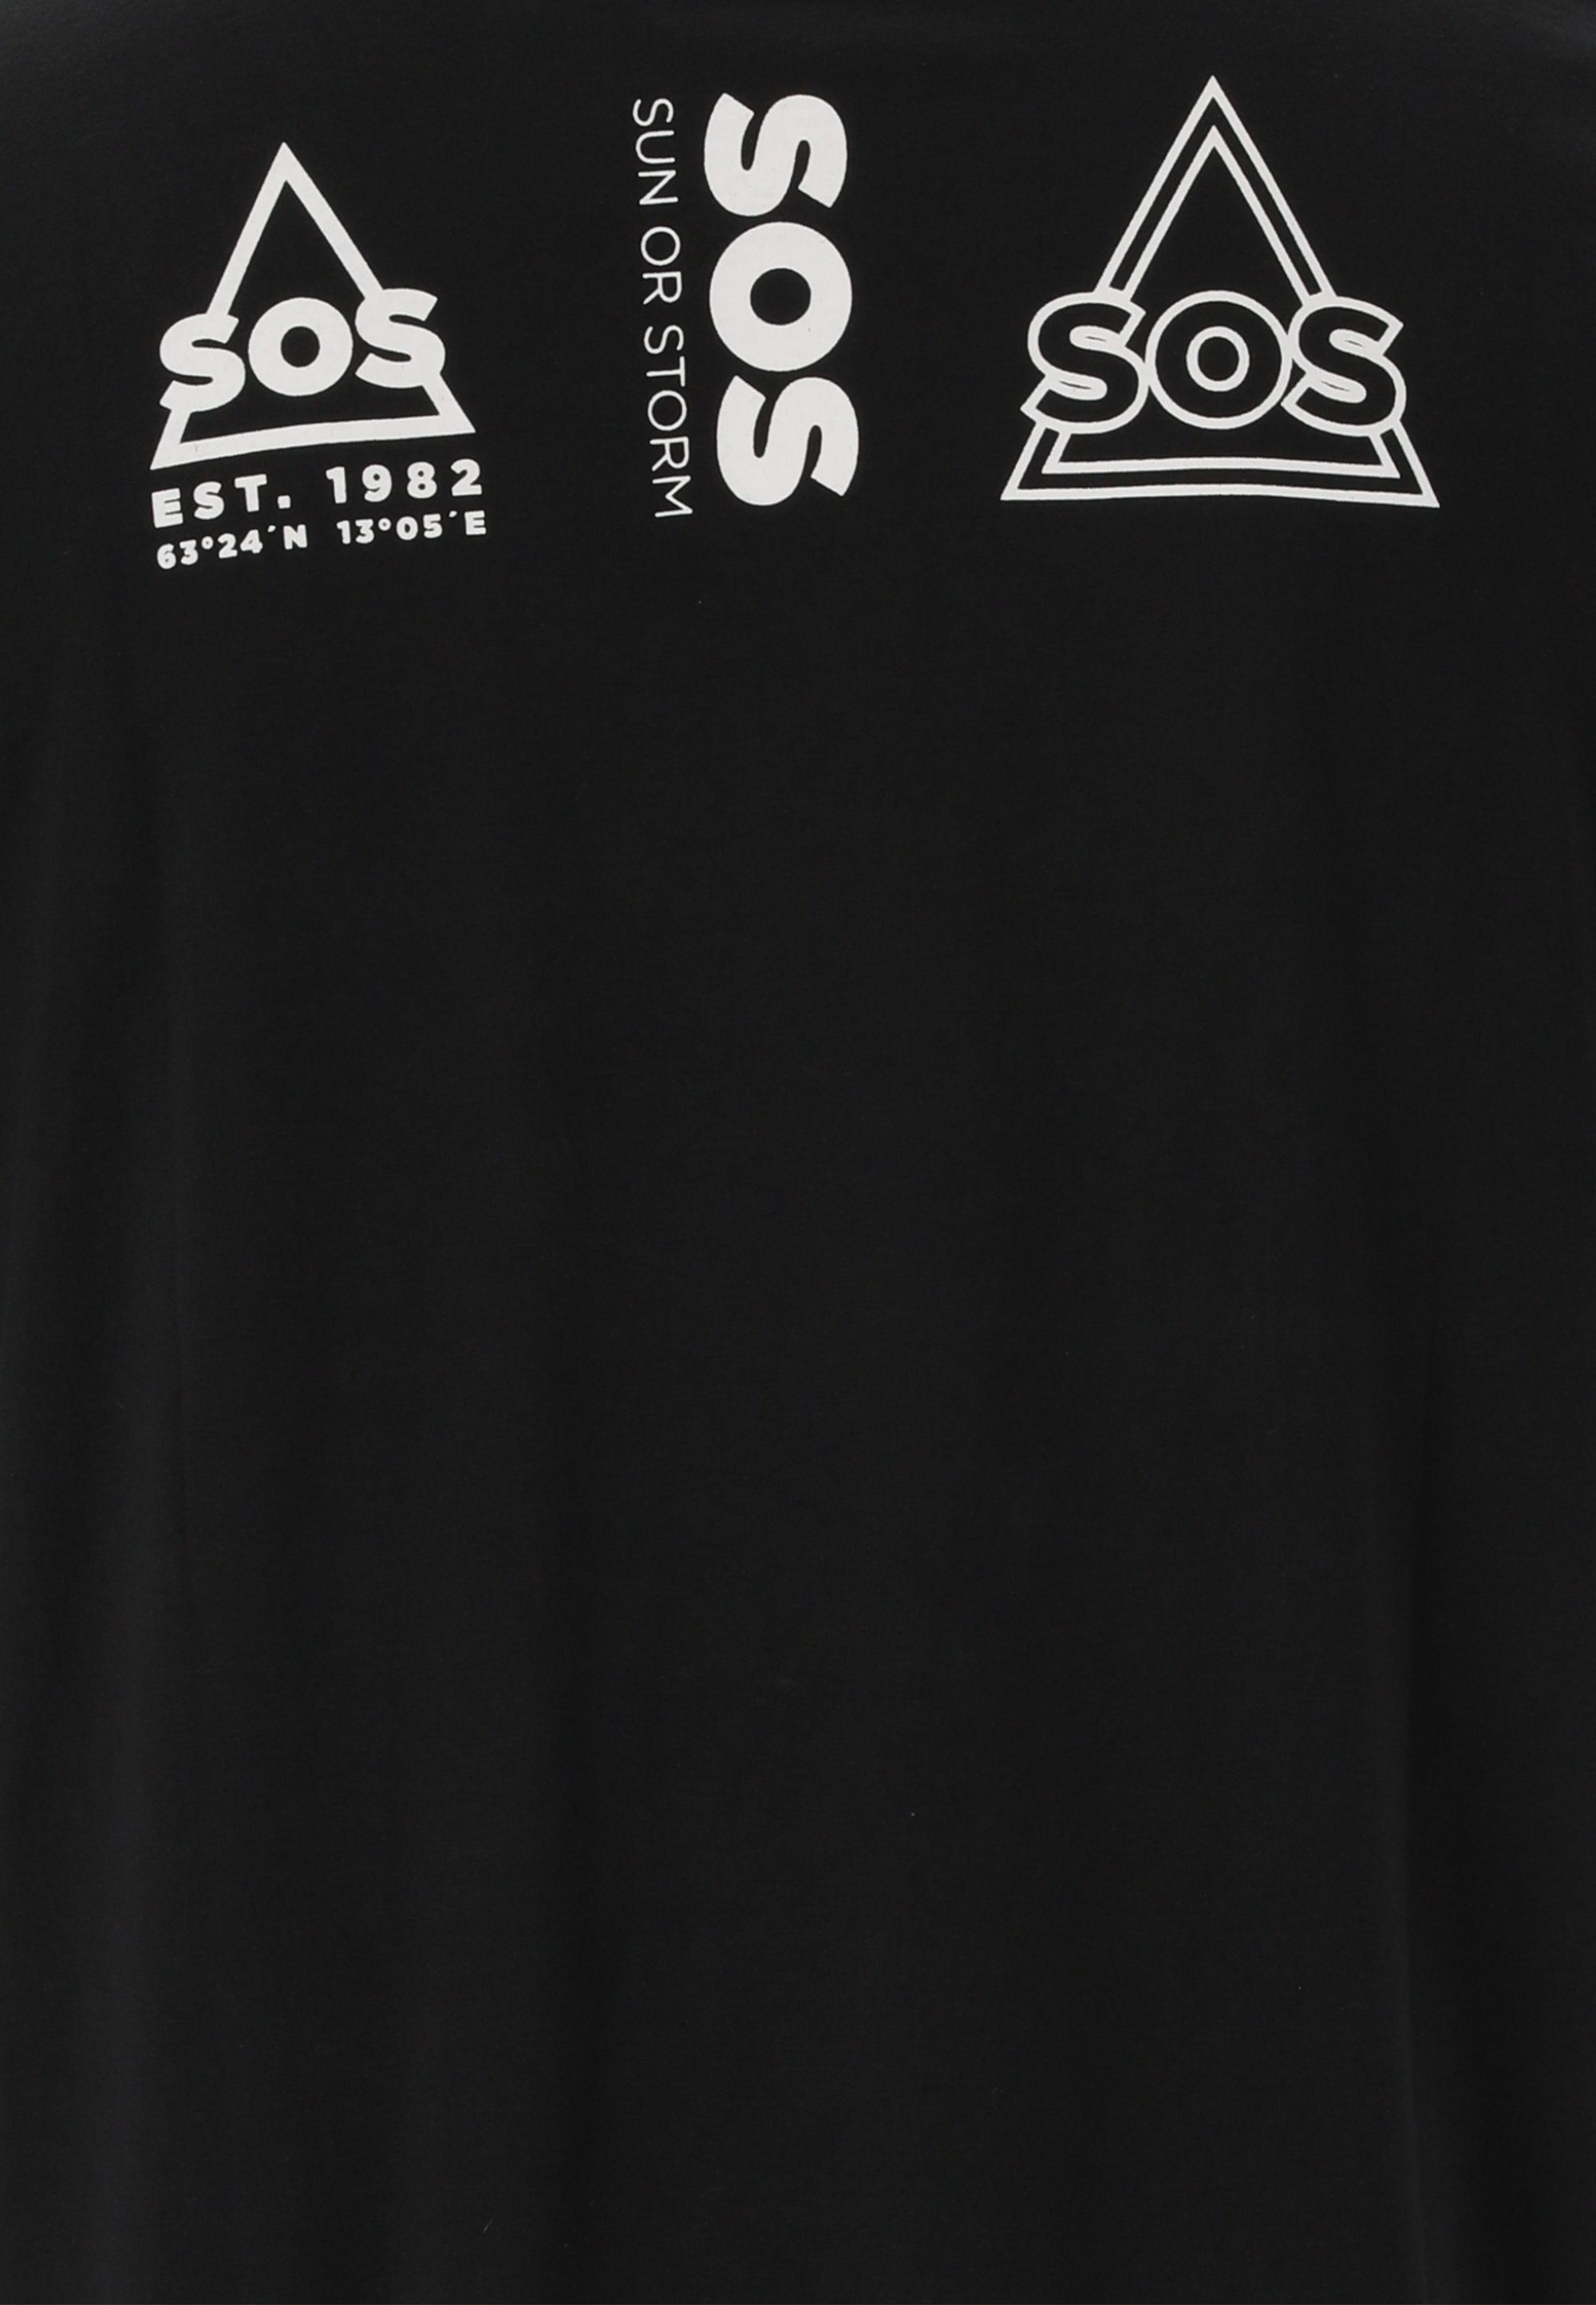 Dolomiti stylischem mit schwarz Logo-Design Funktionsshirt SOS